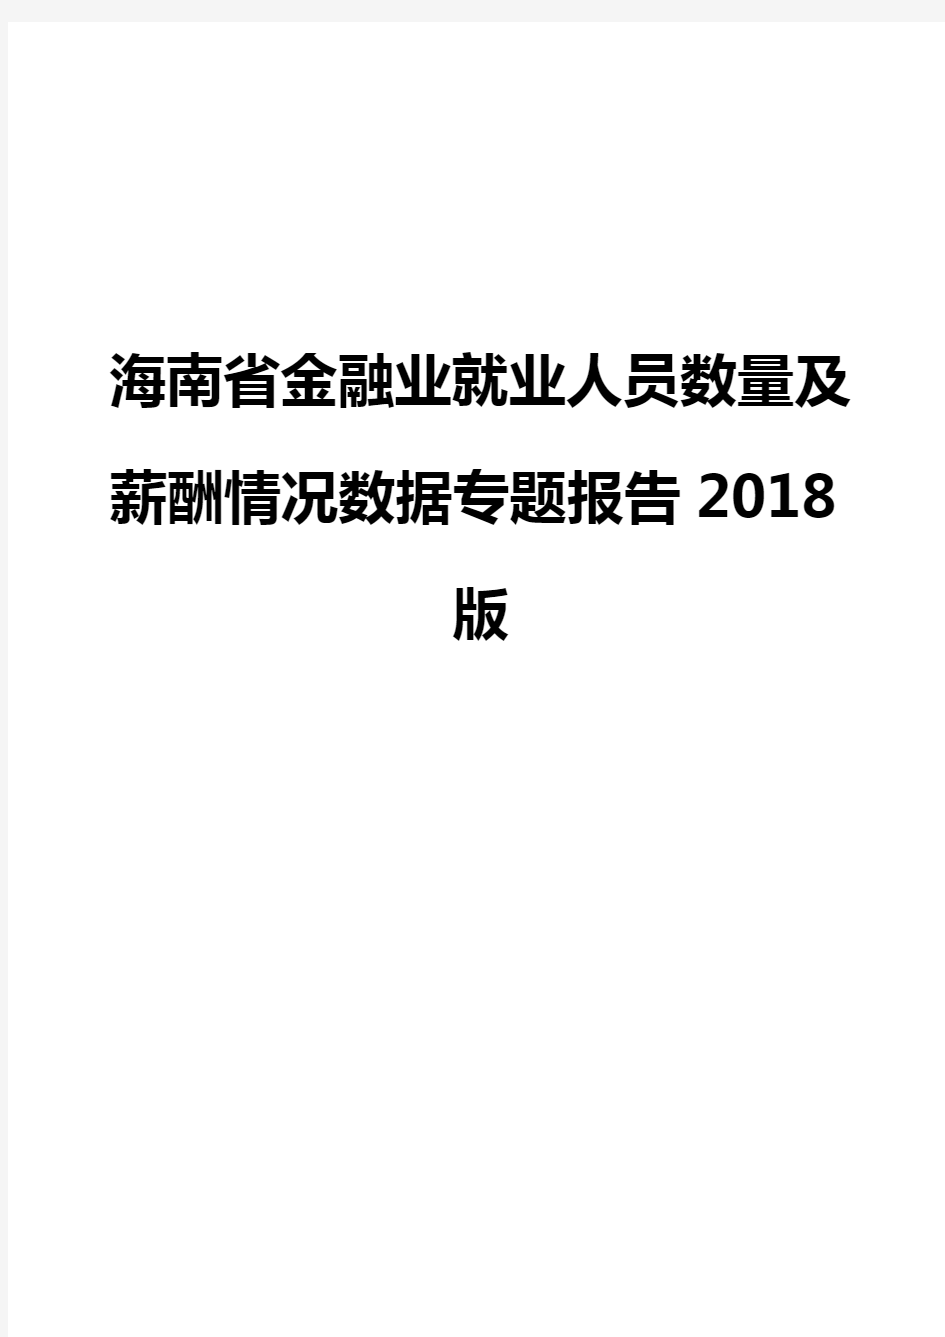 海南省金融业就业人员数量及薪酬情况数据专题报告2018版